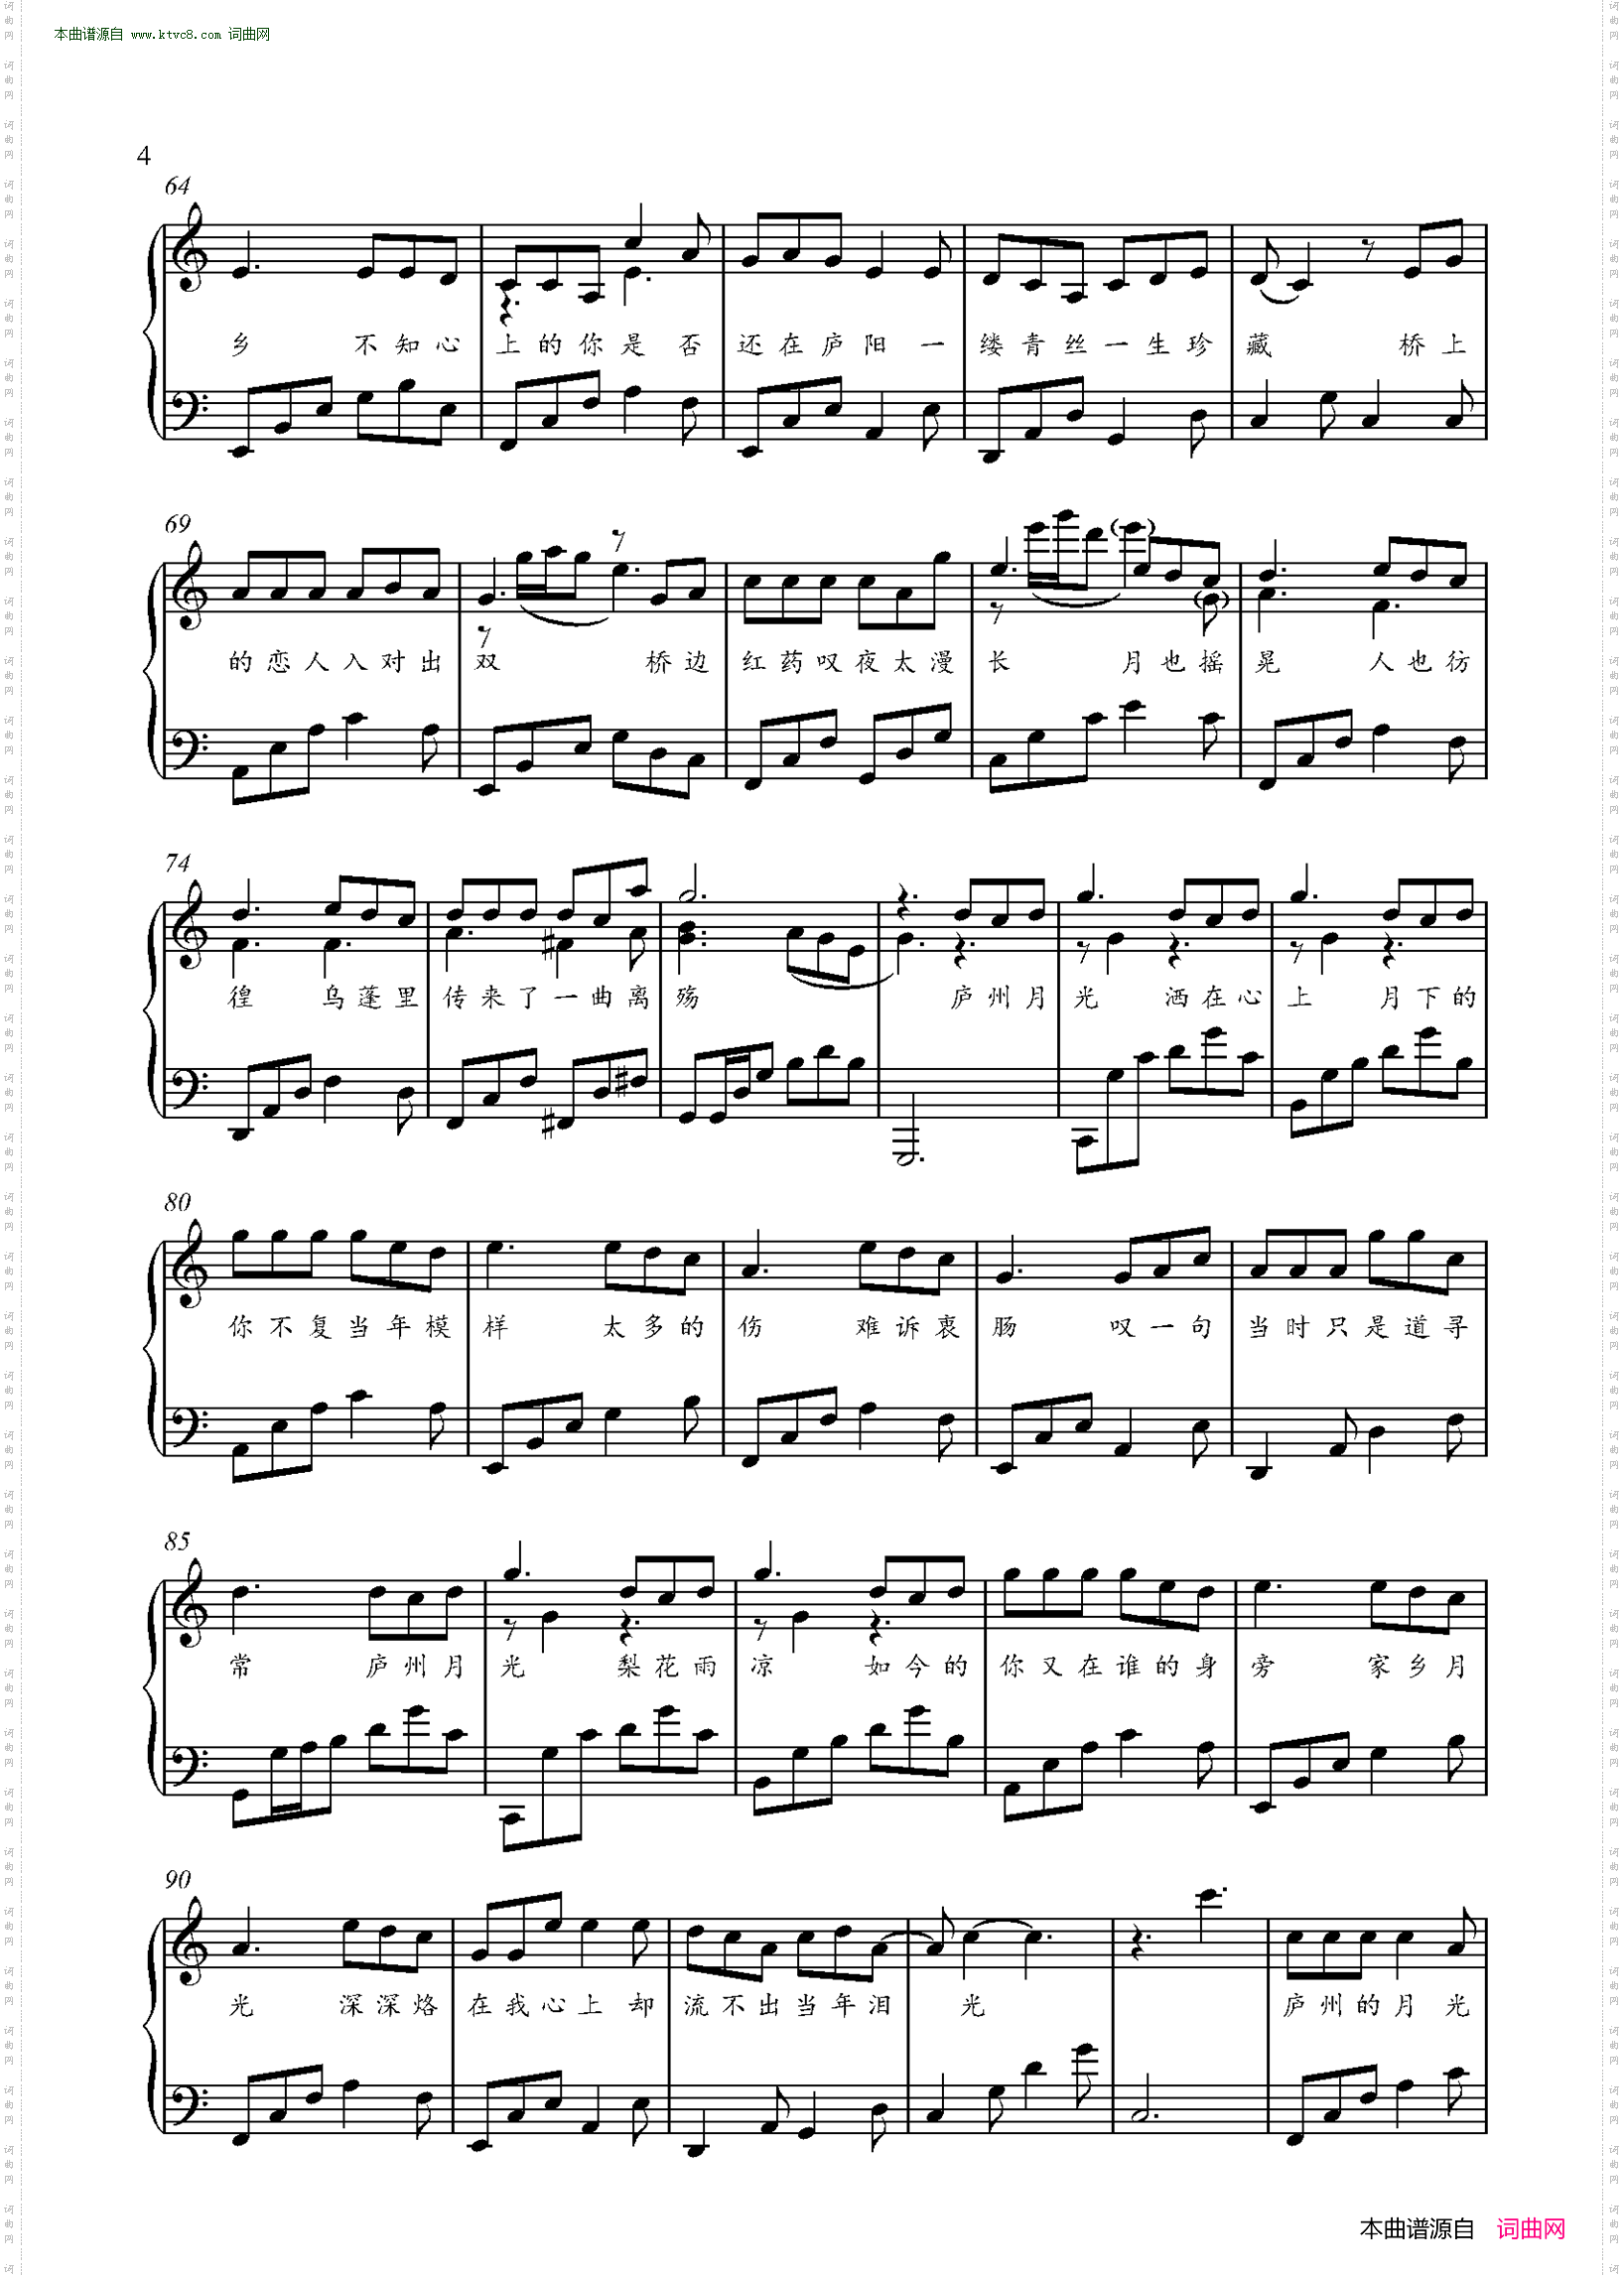 《庐州月(金老师钢琴独奏谱)》,原创钢琴曲谱,器乐,国语歌曲谱 